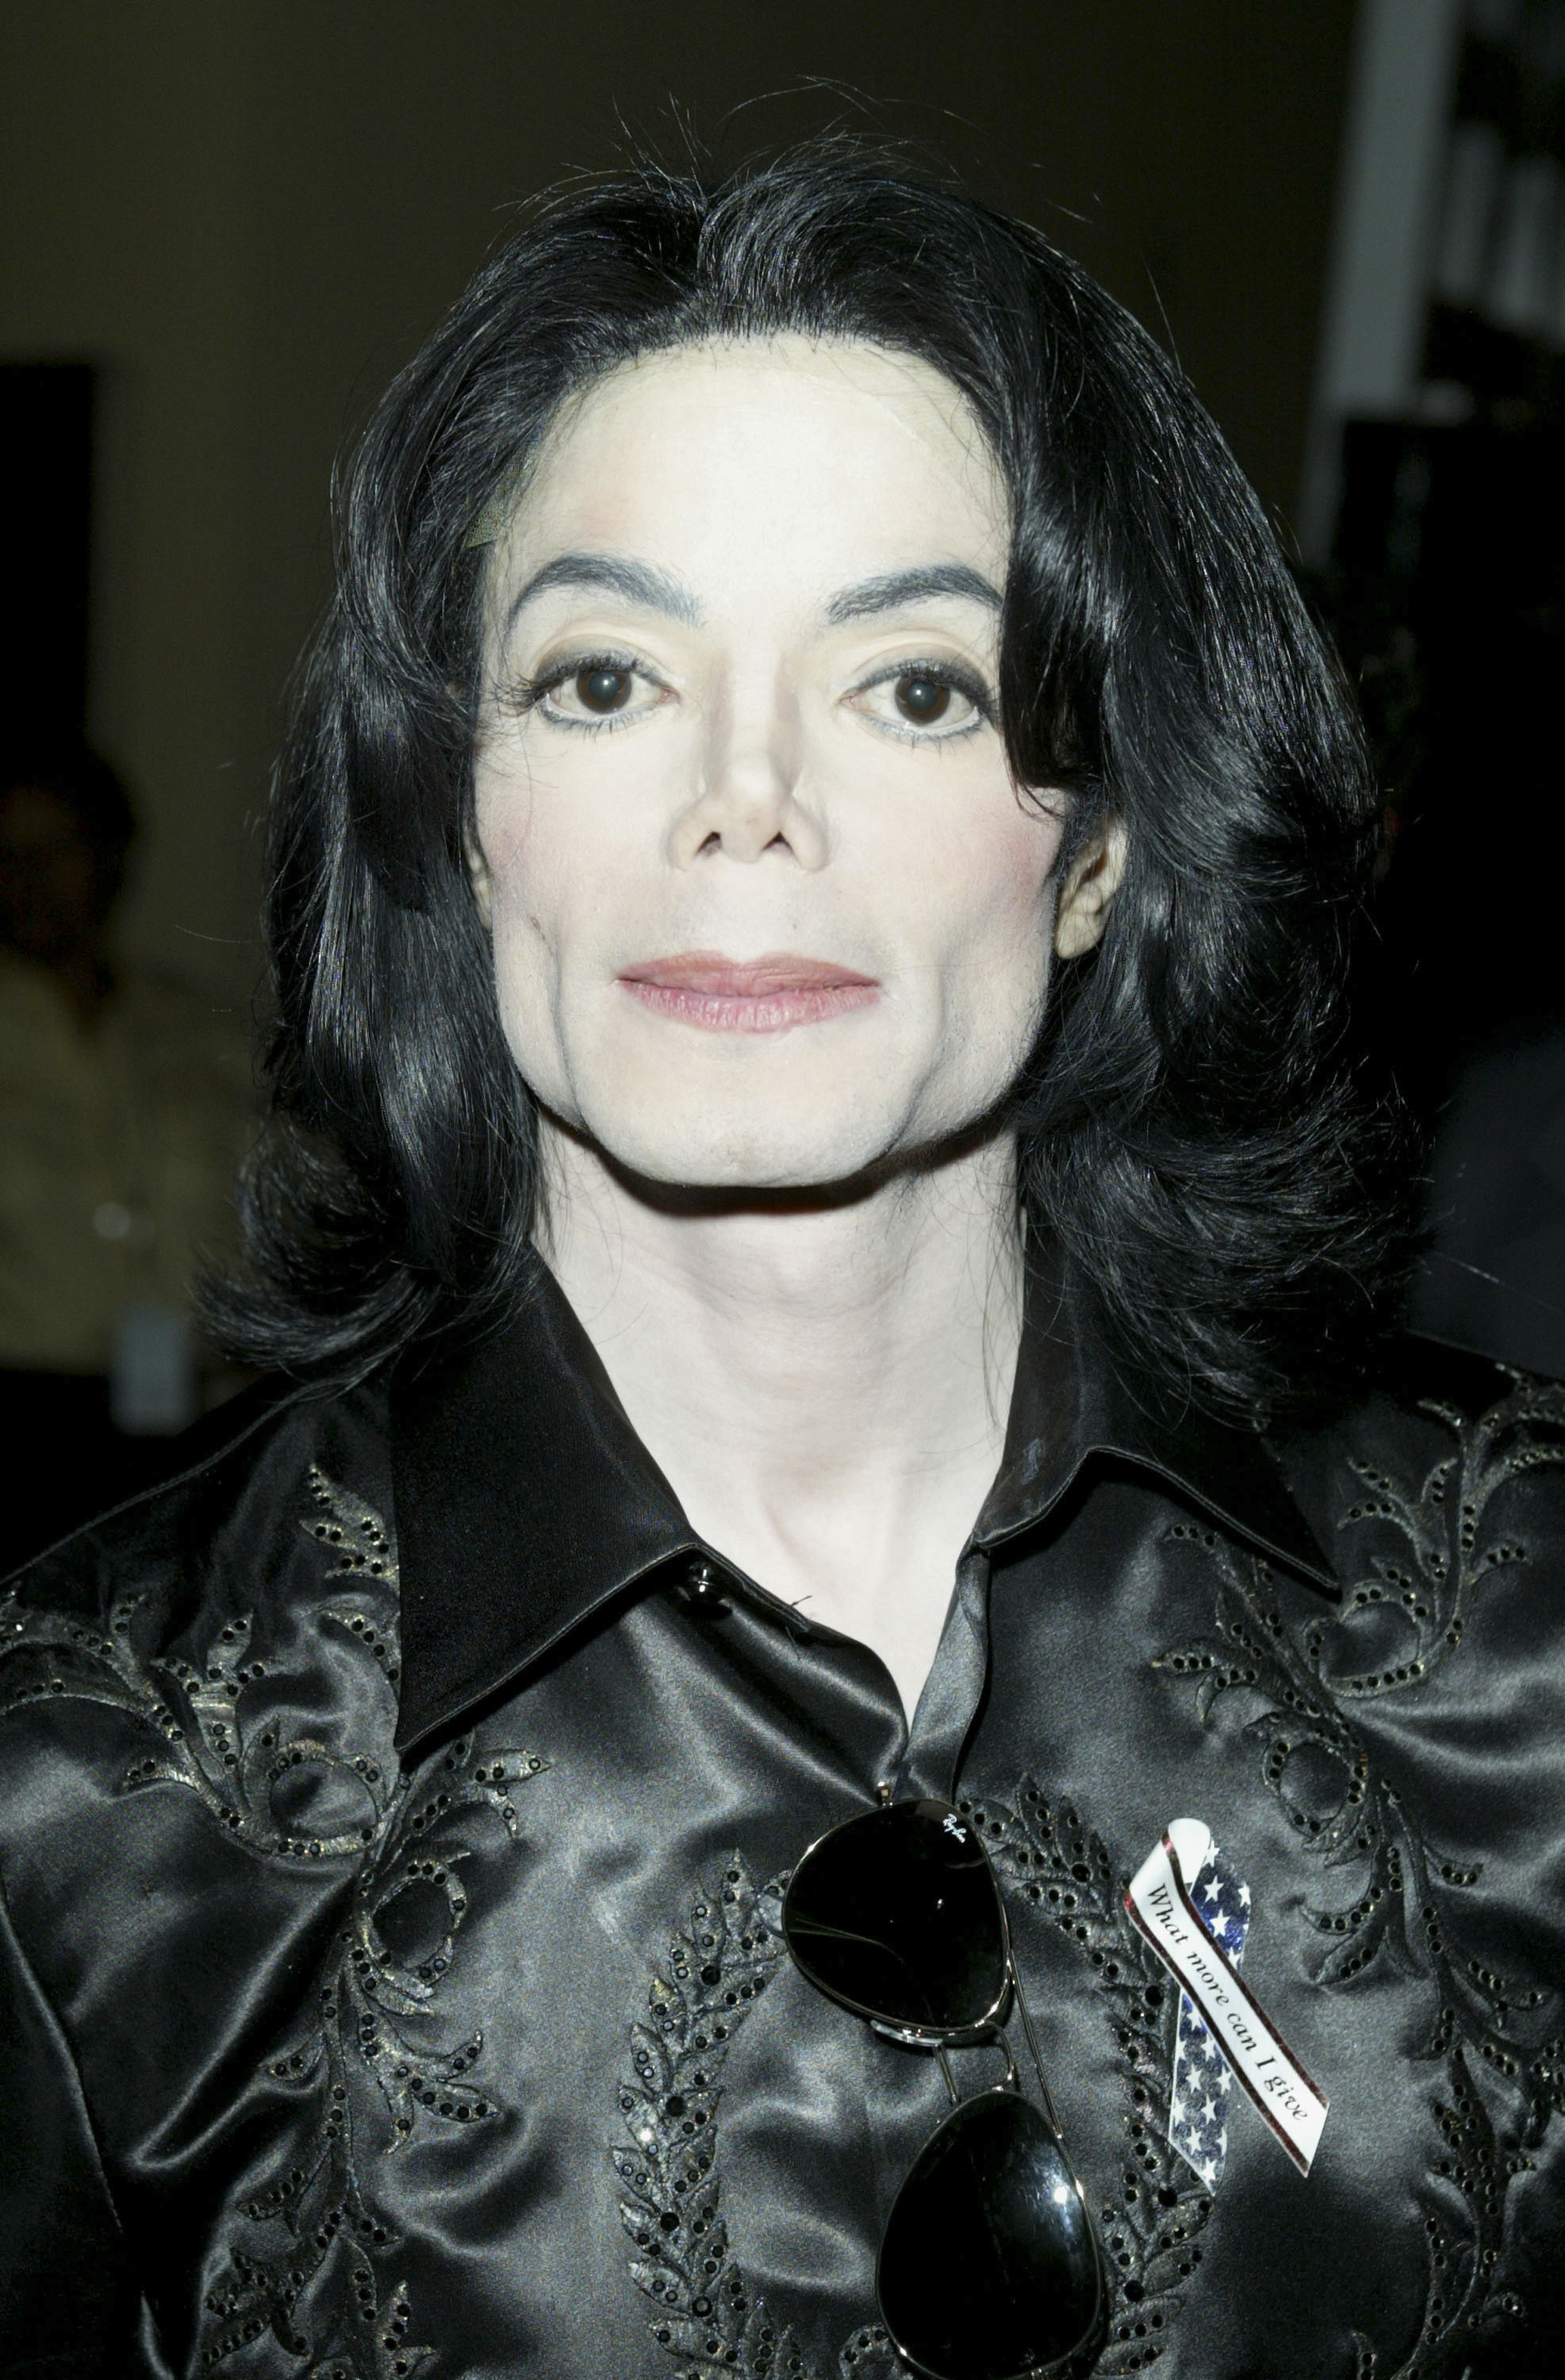 Michael Jackson en 2003 | Source : Getty Images